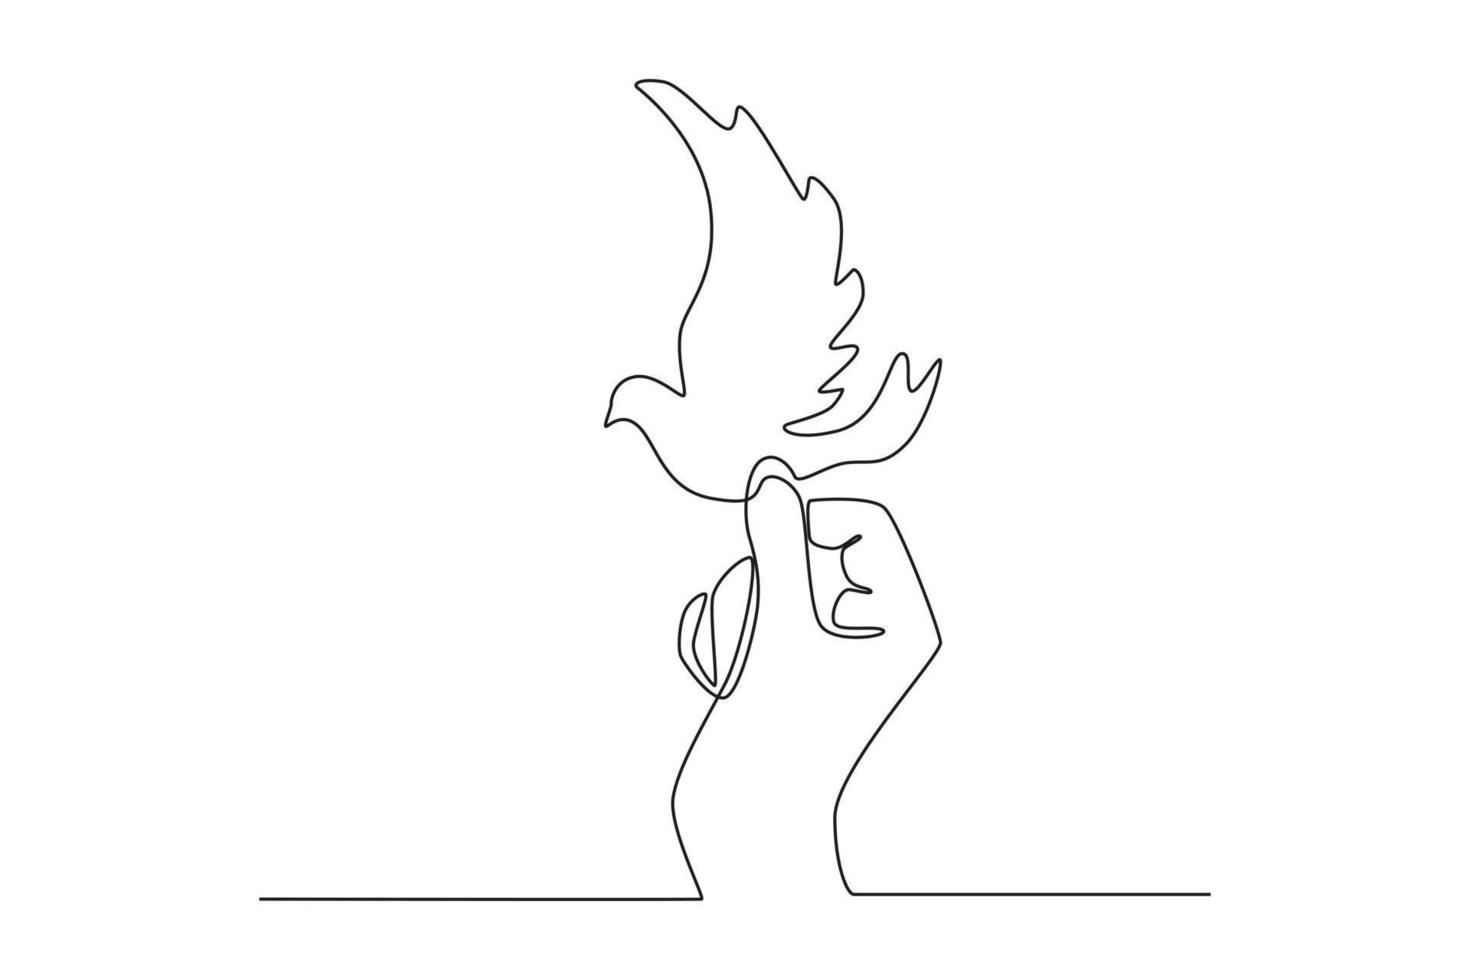 disegno continuo a una linea colomba in mano. concetto di giorno della pace. illustrazione grafica vettoriale di disegno a linea singola.